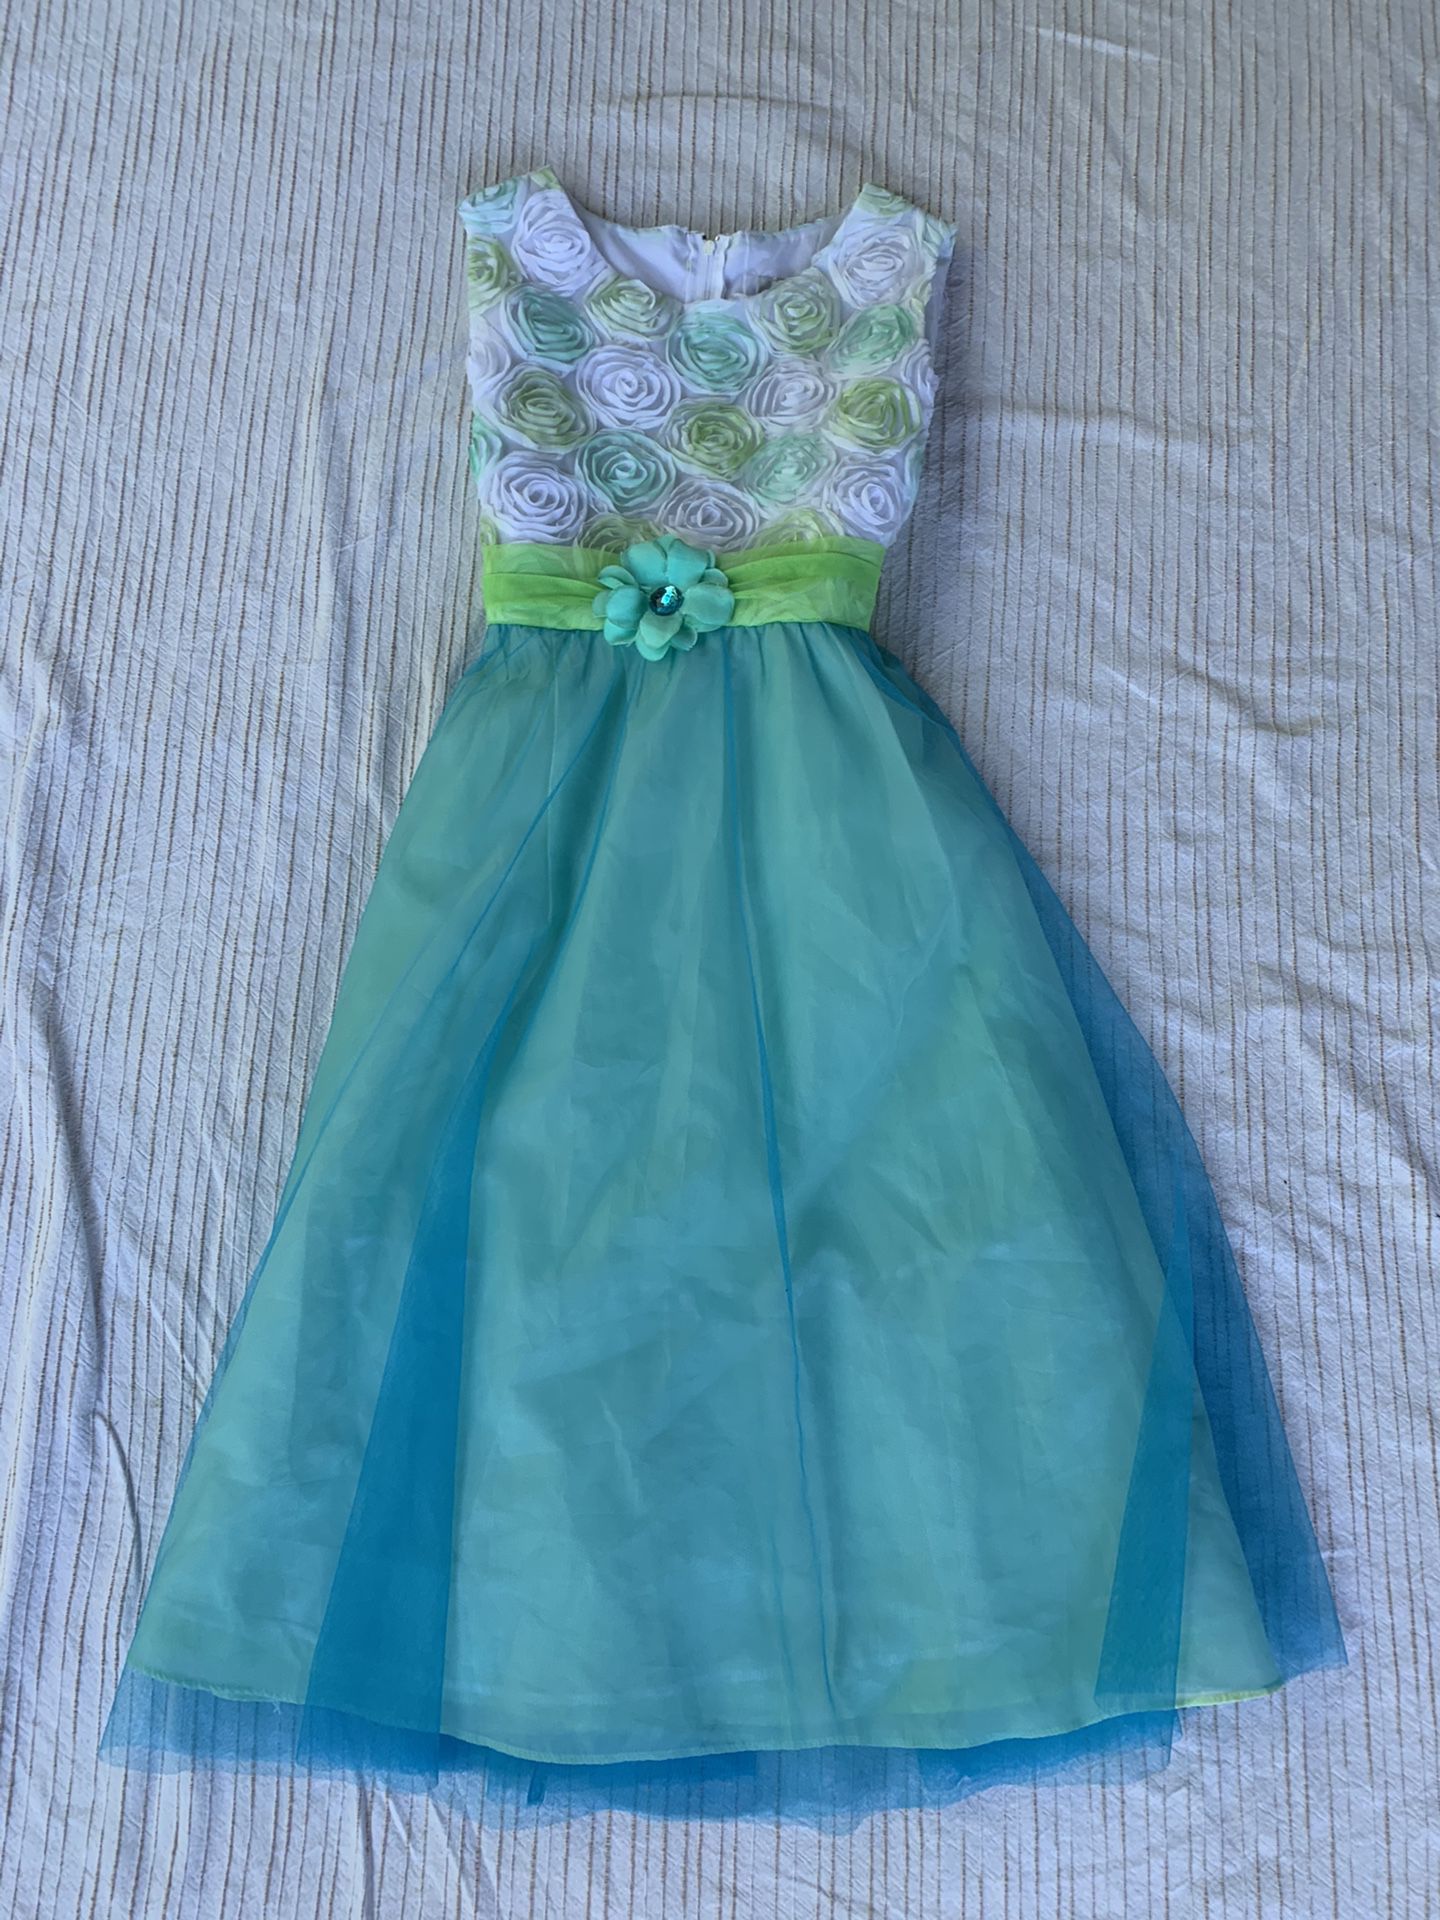 Girls size 16 kinda formal dress blue/green sleeveless flower girl wedding par